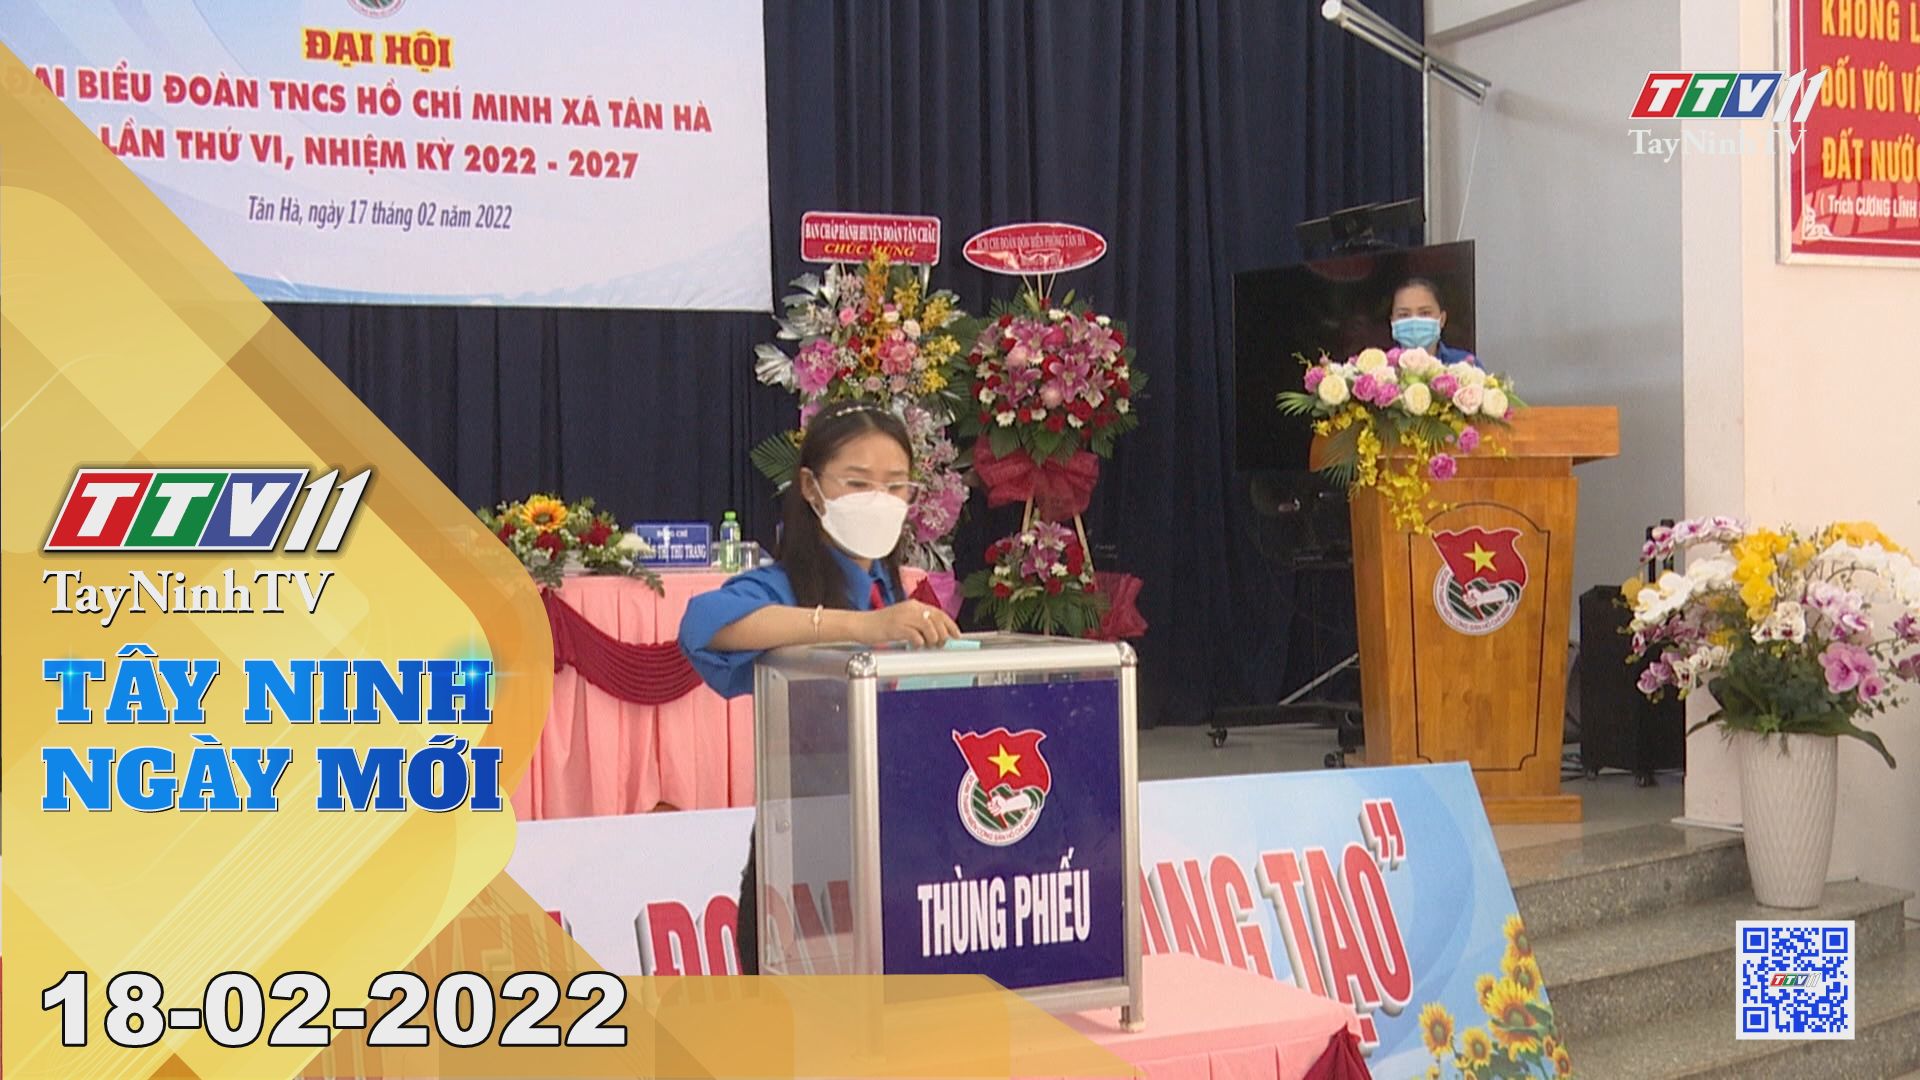 Tây Ninh ngày mới 18-02-2022 | Tin tức hôm nay | TayNinhTV